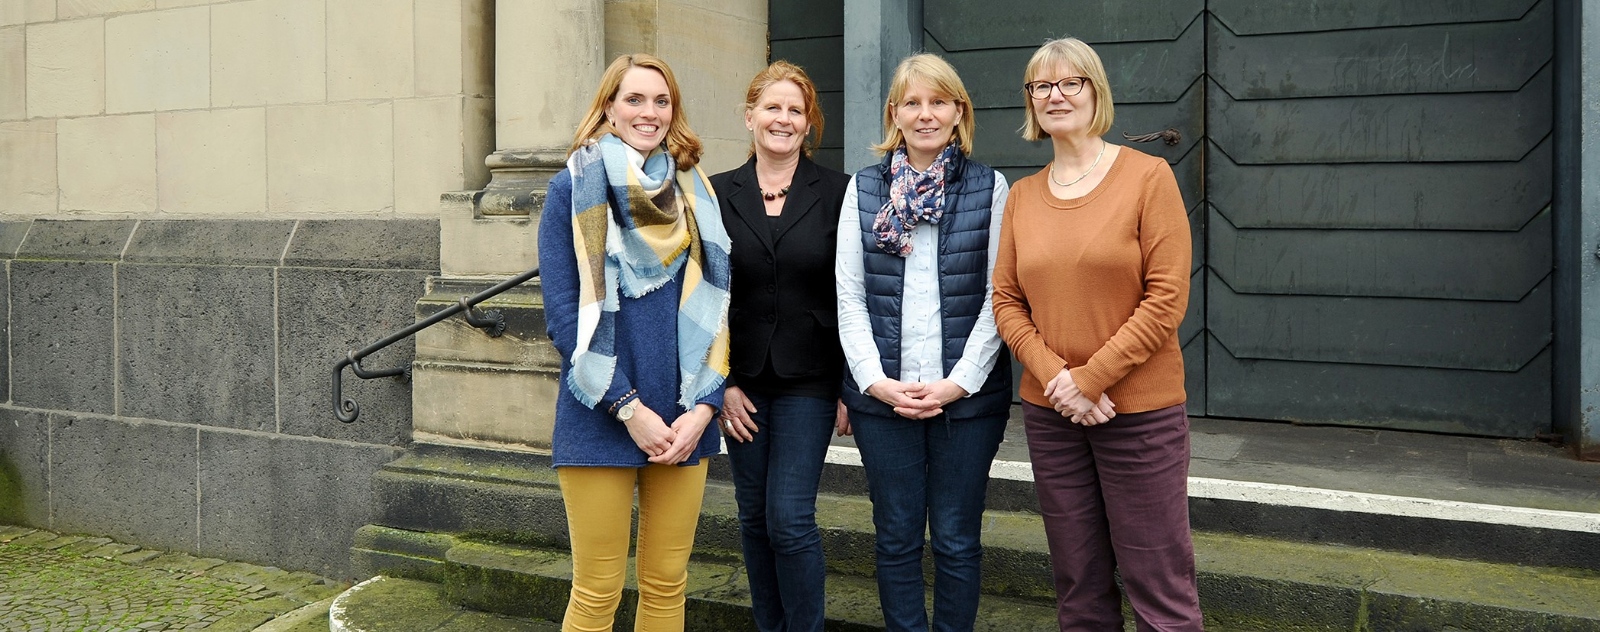 Pfarramtssekretärinnen (v.l.n.r.): Rebecca Ecken, Petra Klischan, Christiane Kelterbaum, Renate Seidenberg